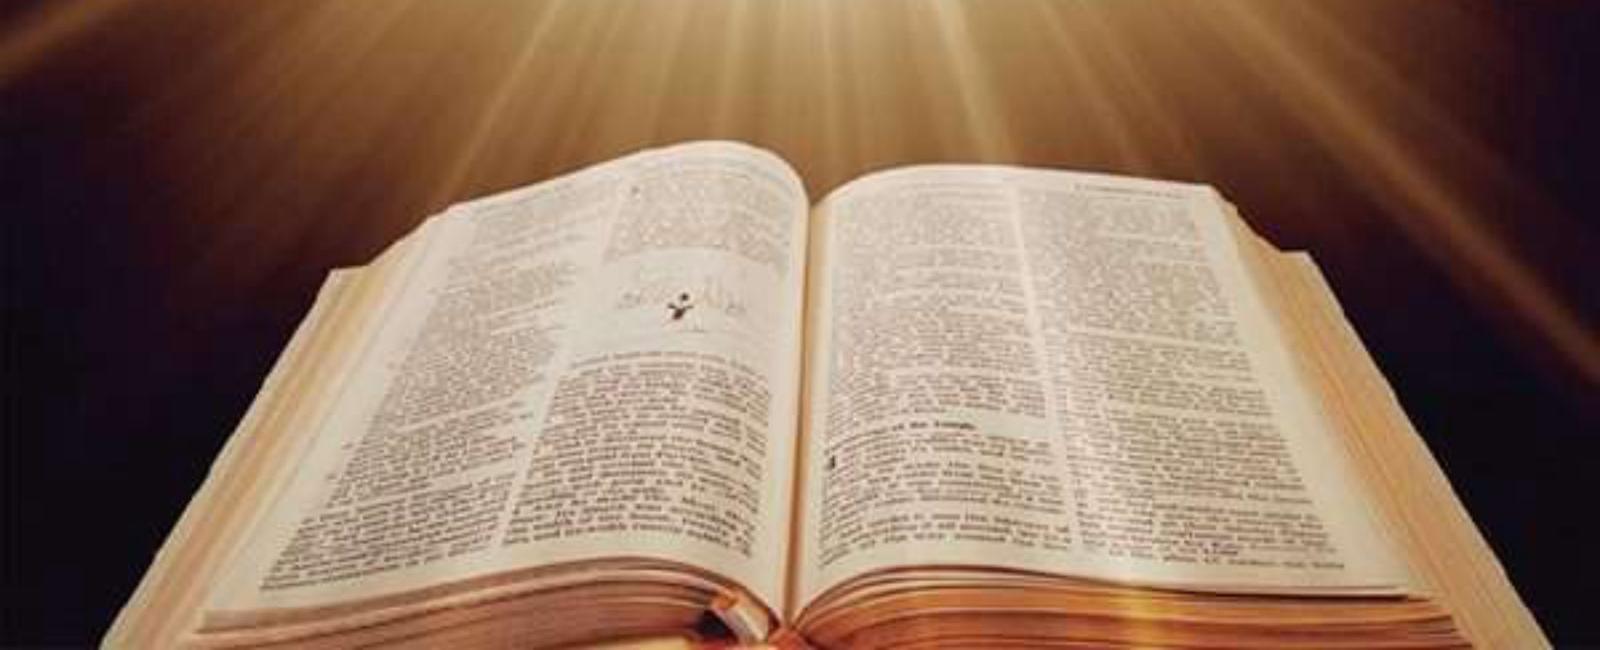 Curiozitati despre biblie